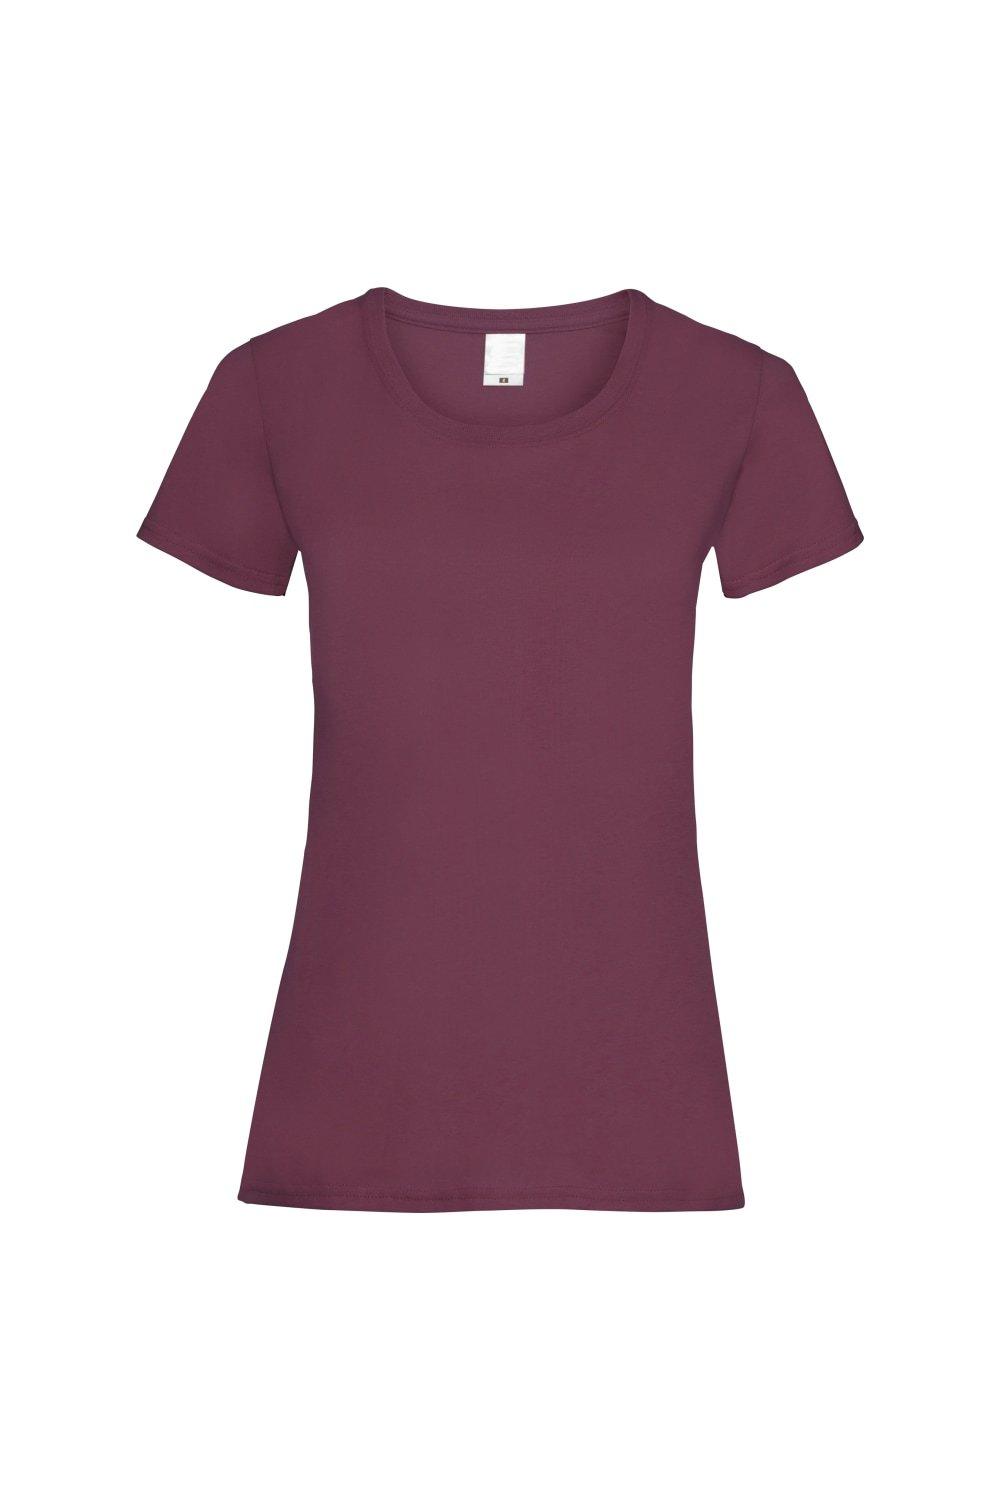 Повседневная футболка с короткими рукавами Value Universal Textiles, красный